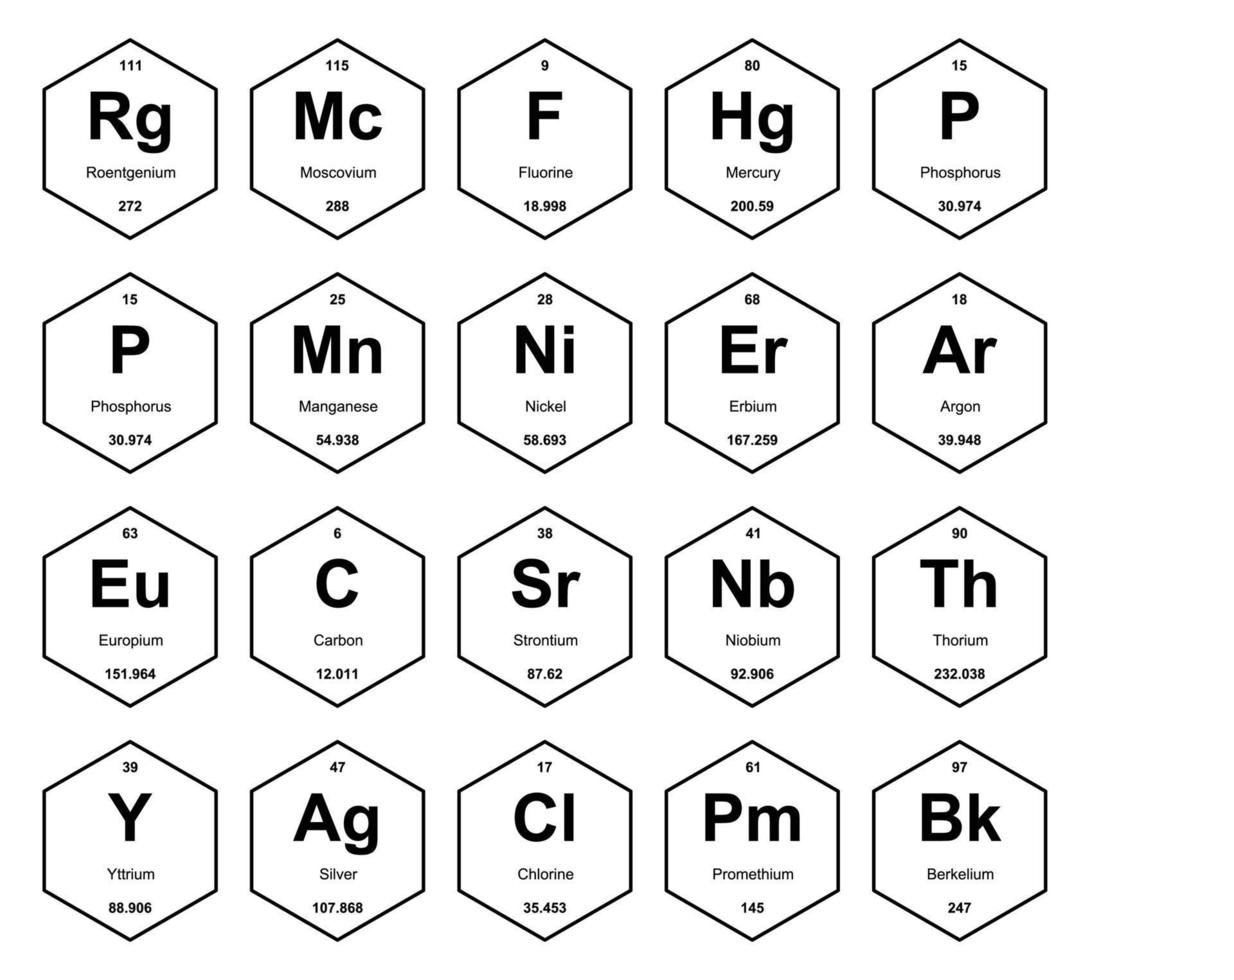 20 tableau préodique de la conception du pack d'icônes d'éléments vecteur